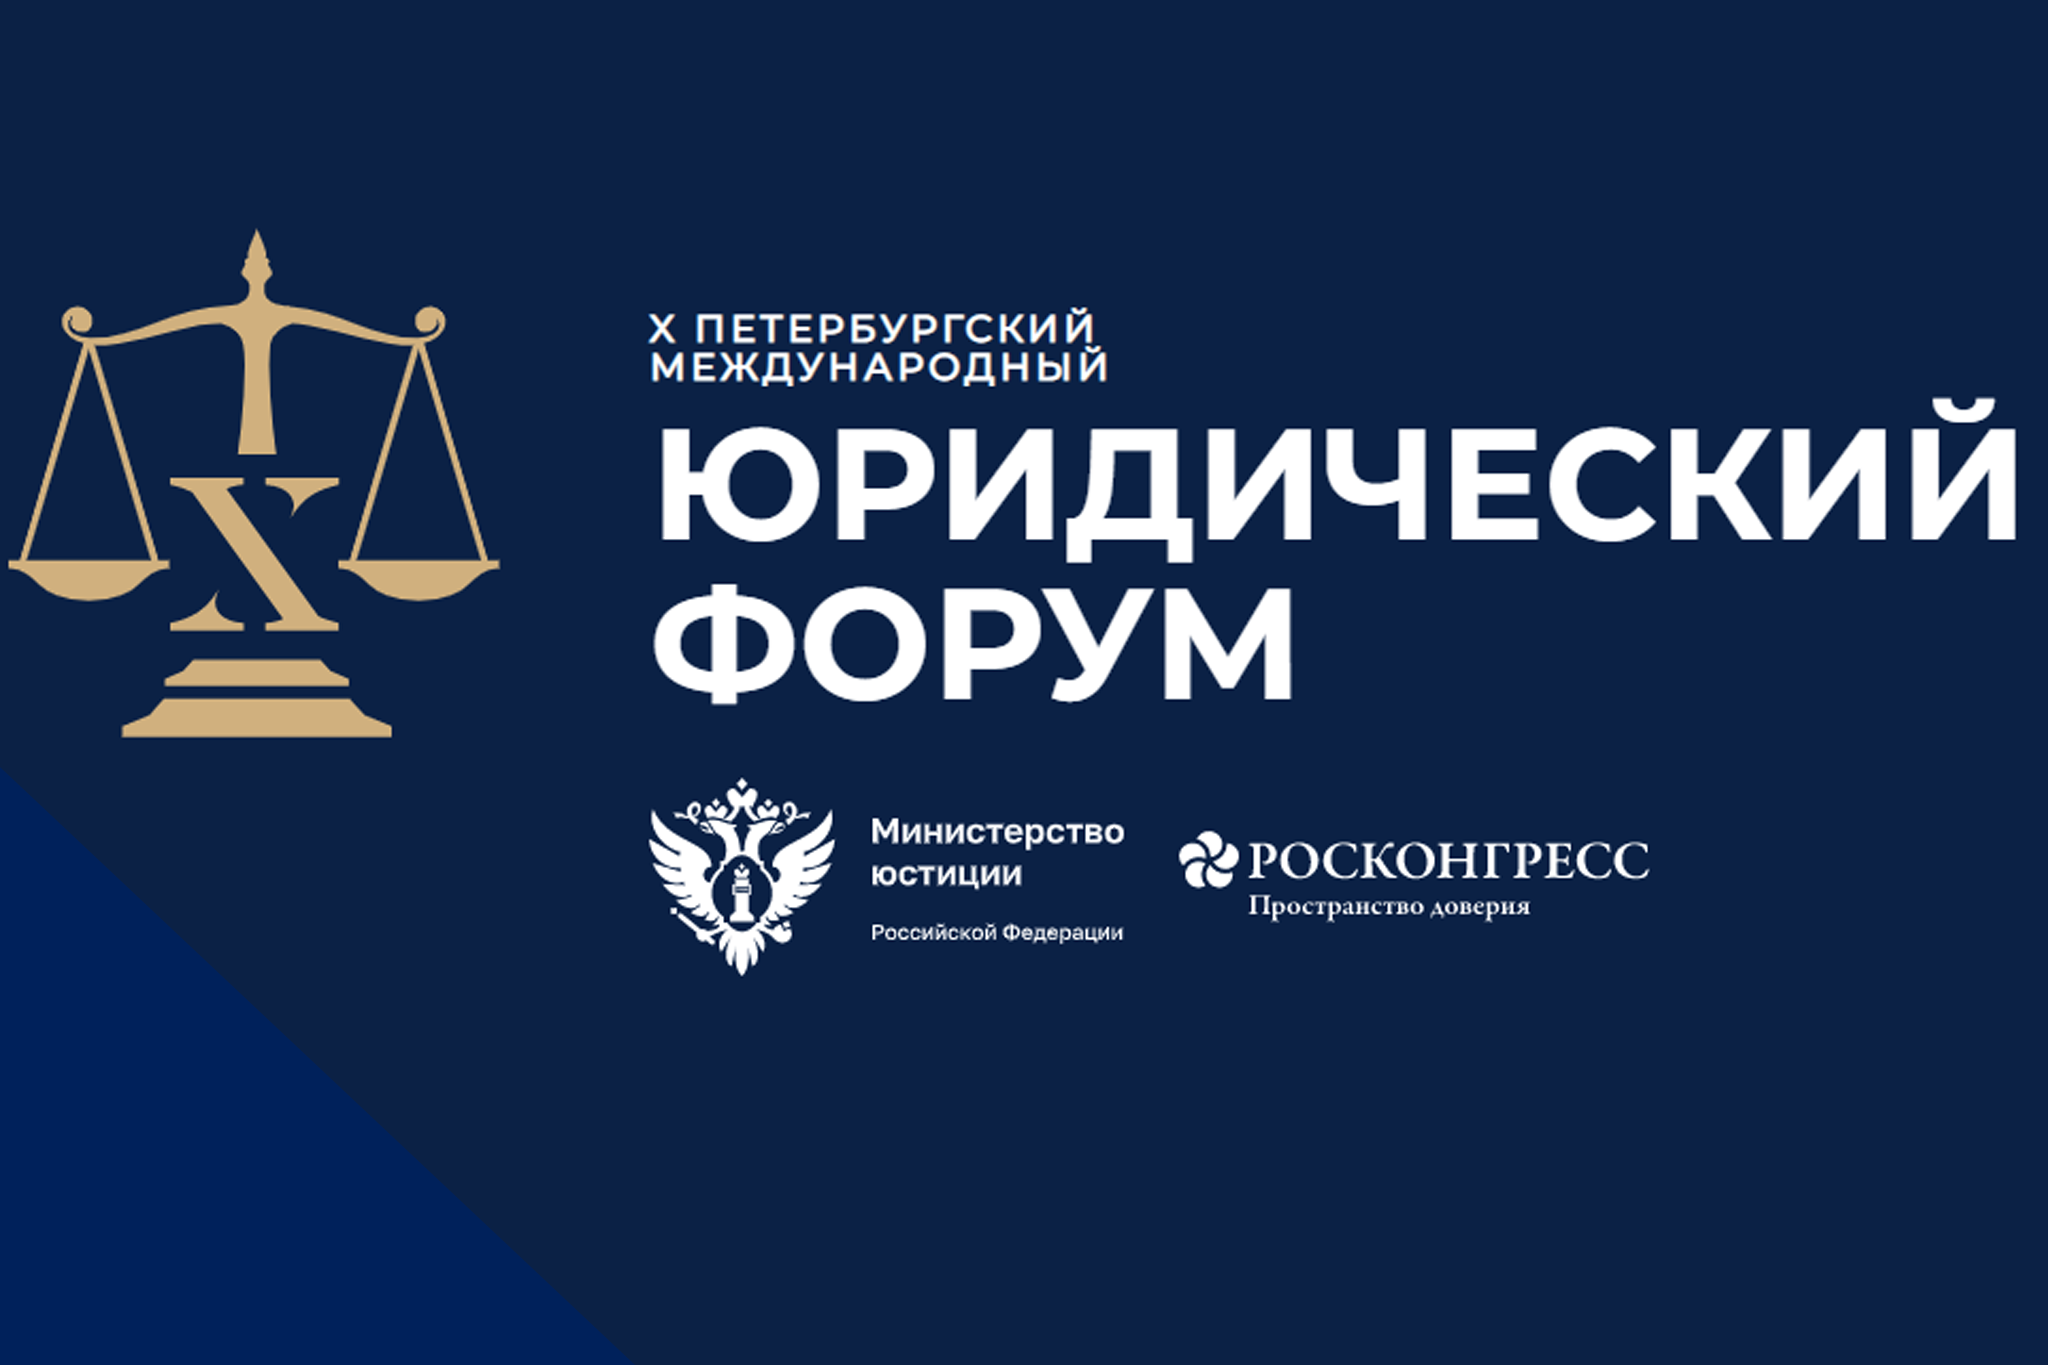 О XI Петербургском международном юридическом форуме